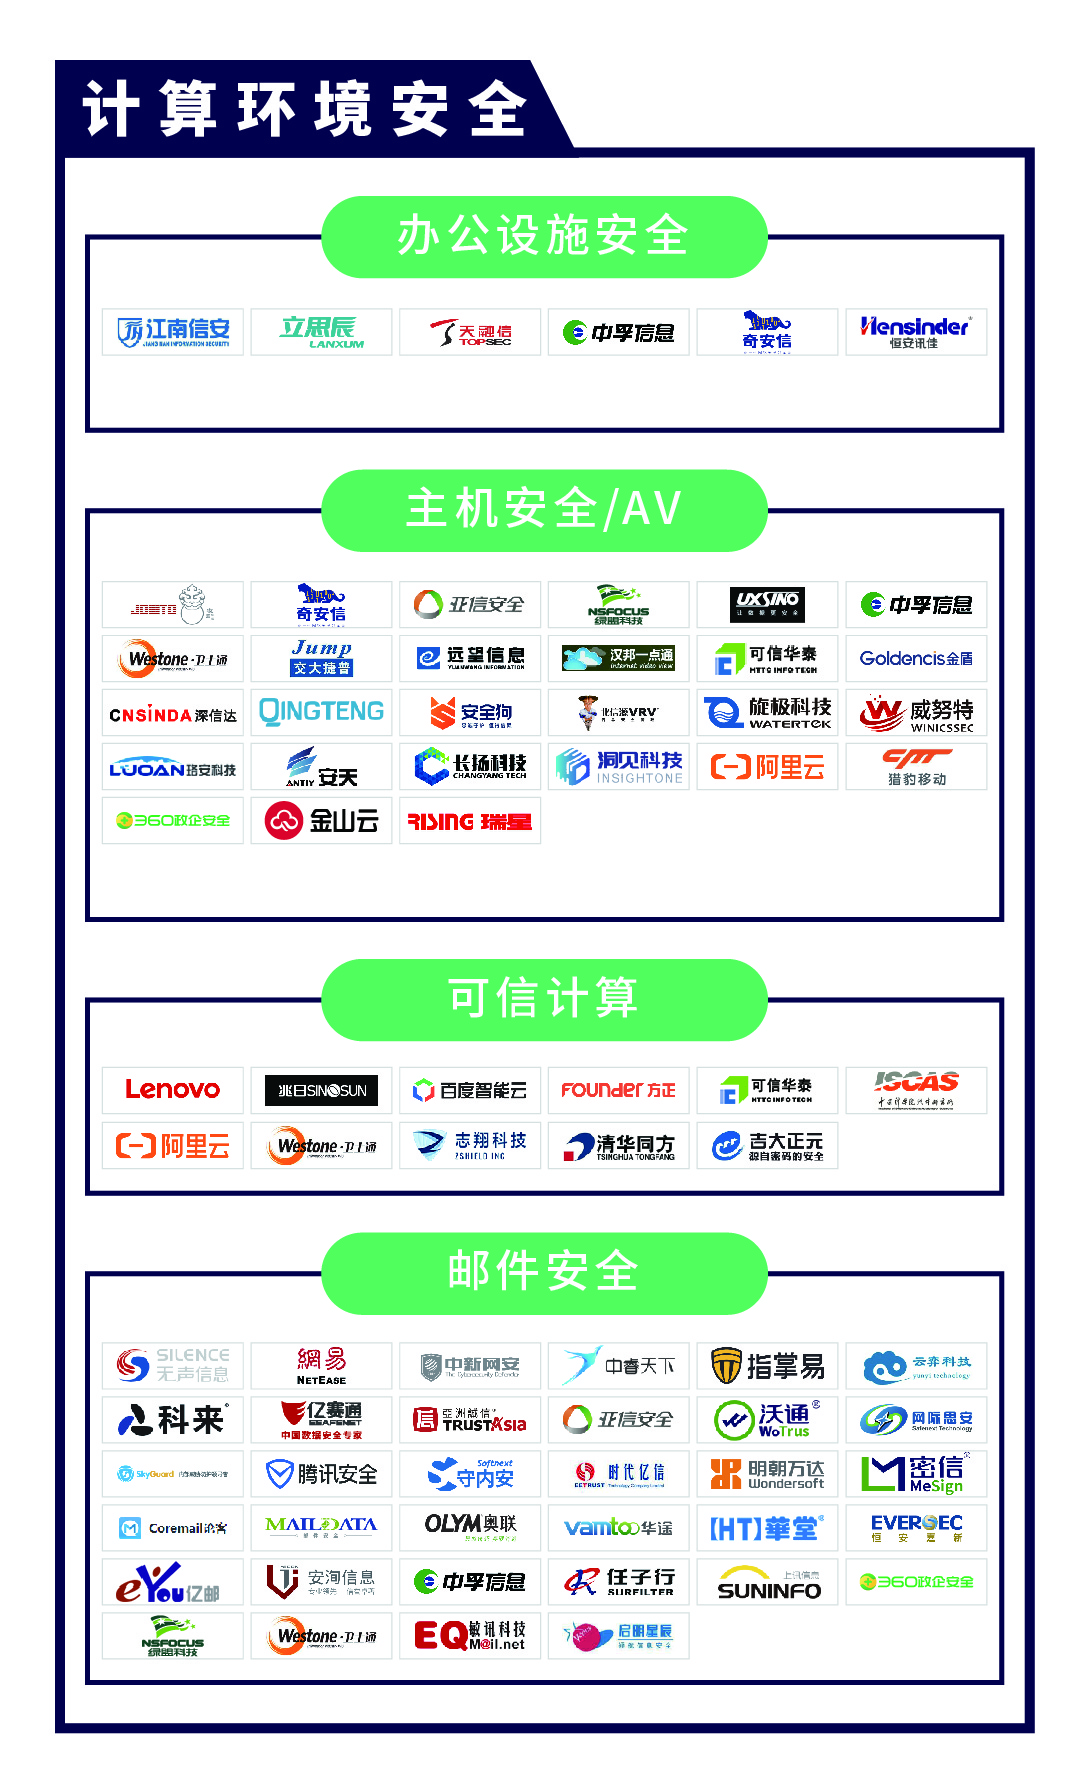 《CCSIP 2020中国网络安全产业全景图》正式发布 | FreeBuf咨询-第2张图片-网盾网络安全培训